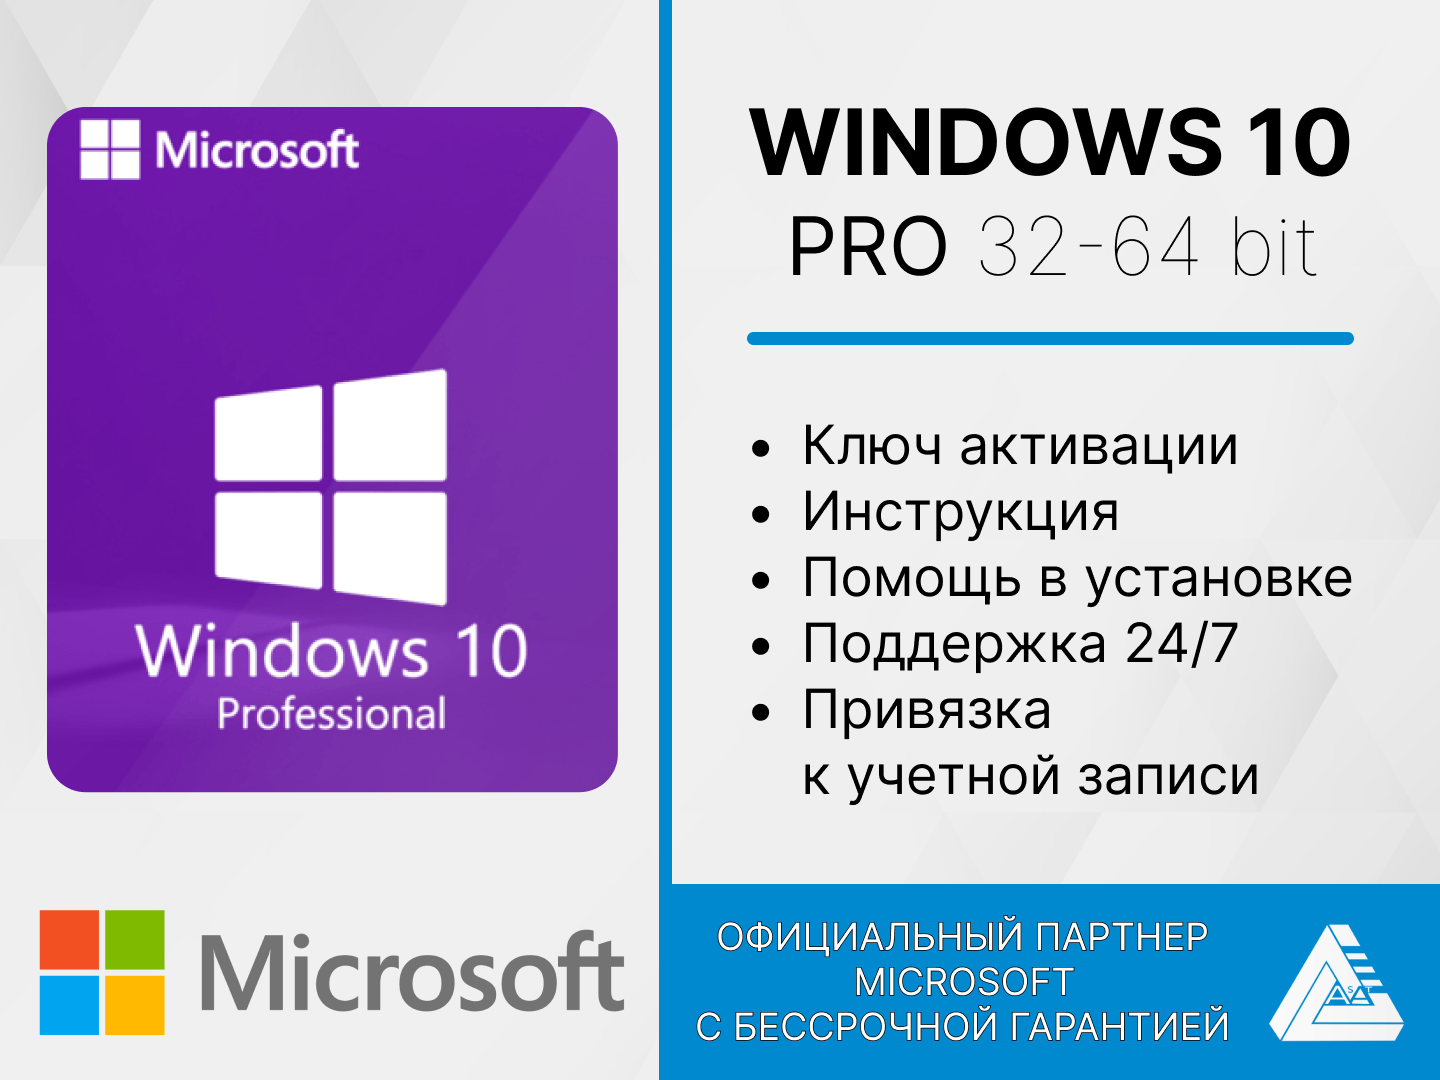 Microsoft Windows 10 PRO с привязкой к учетной записи. Лицензия для России. Многоразовое использование